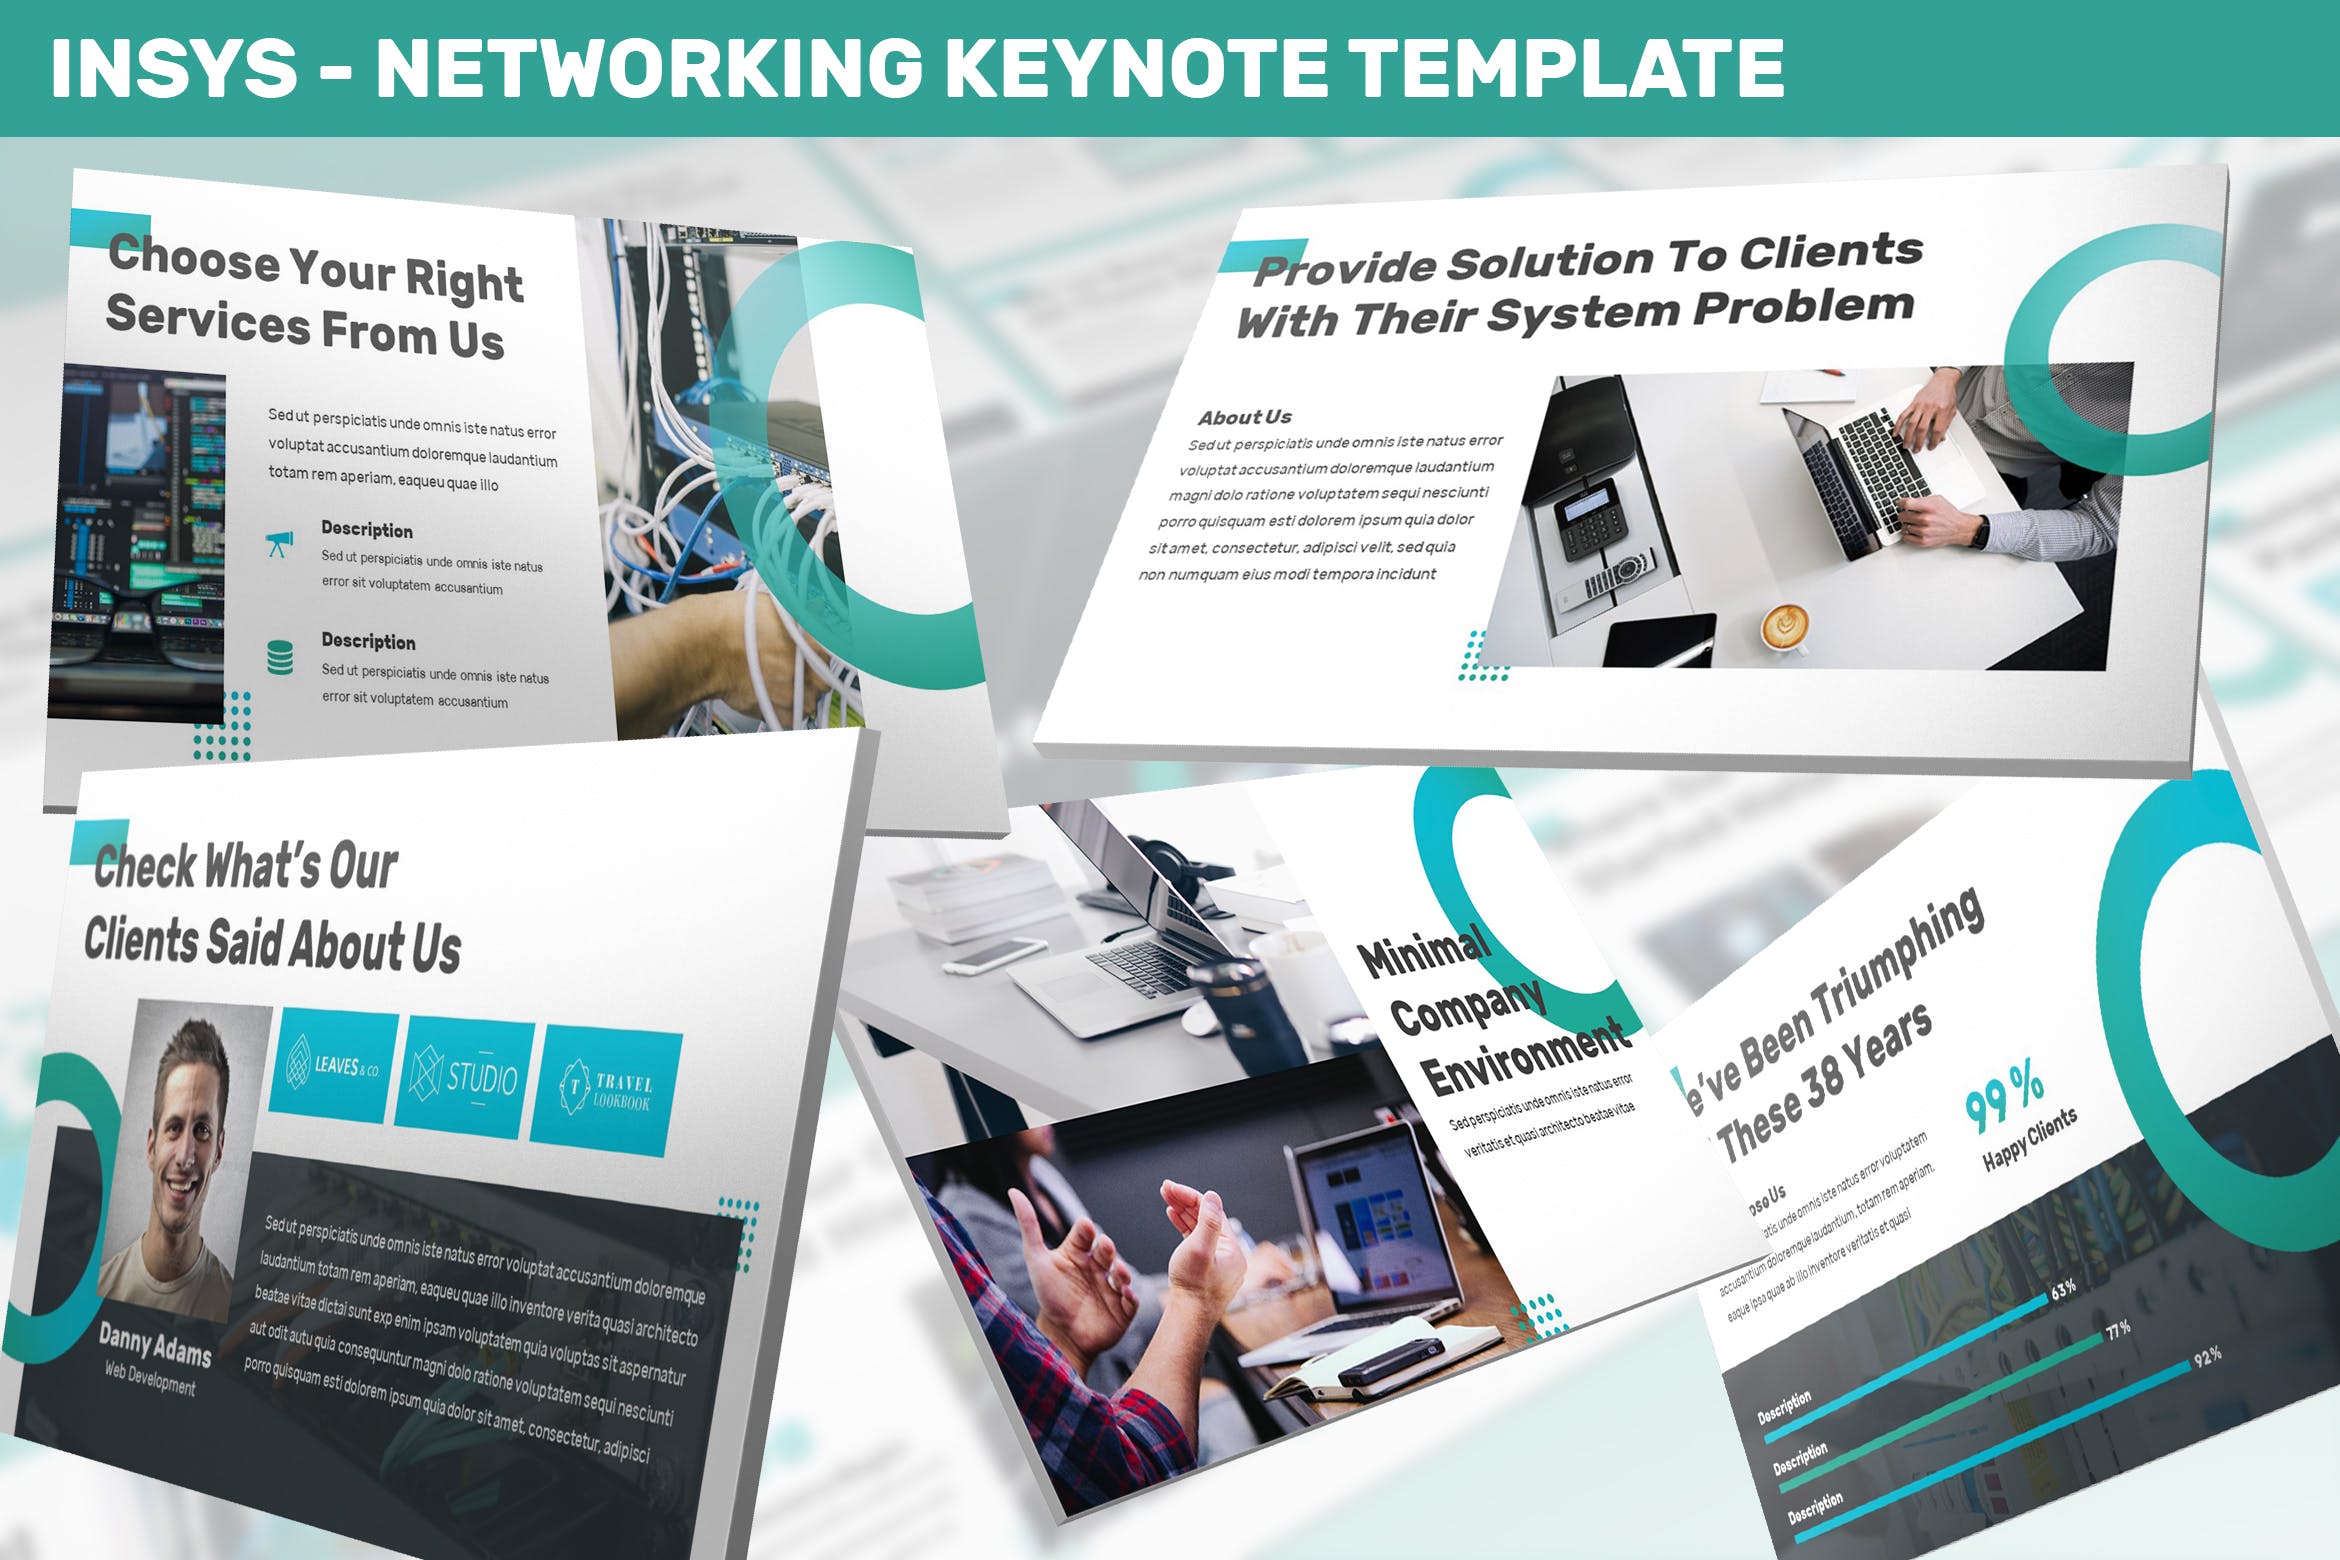 网络科技公司/技术/融资主题蚂蚁素材精选Keynote模板模板 Insys – Networking Keynote Template插图